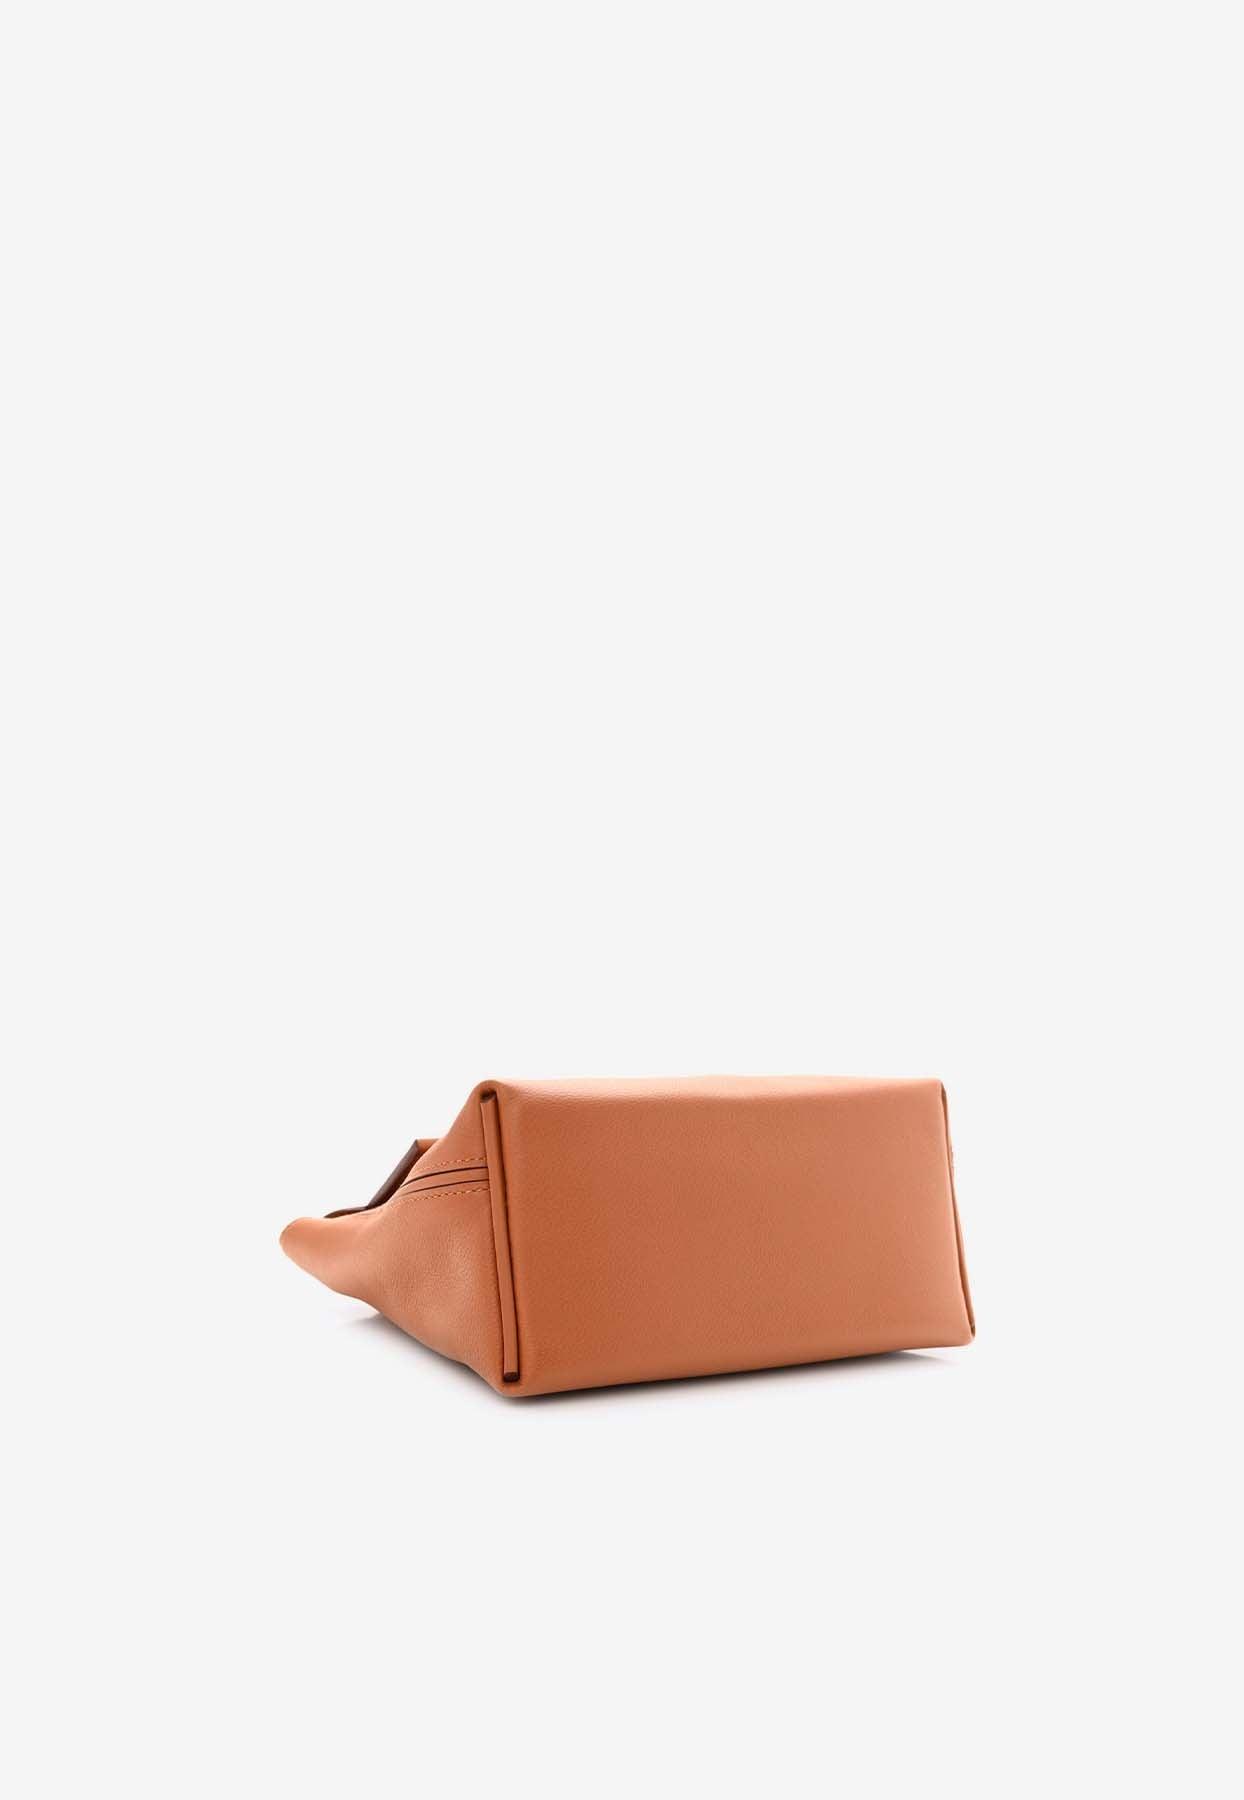 Hermes 2424 mini 8L beton, Women's Fashion, Bags & Wallets